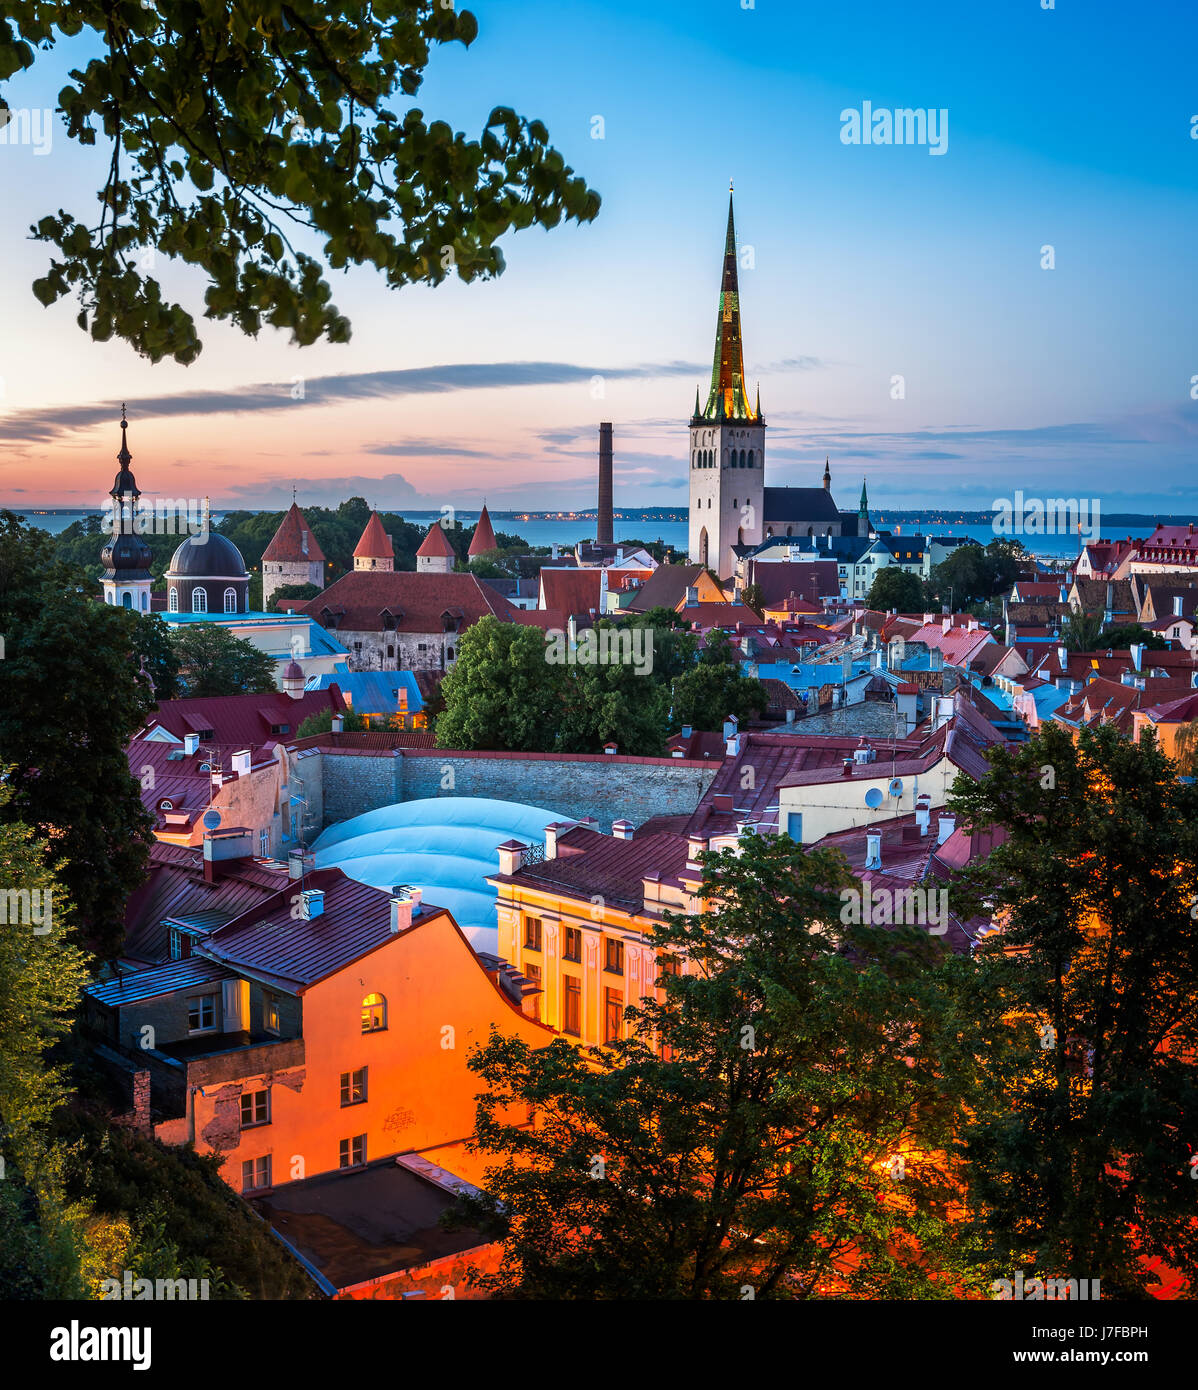 Luftbild der Altstadt von Tallinn am Abend, Tallinn, Estland Stockfoto